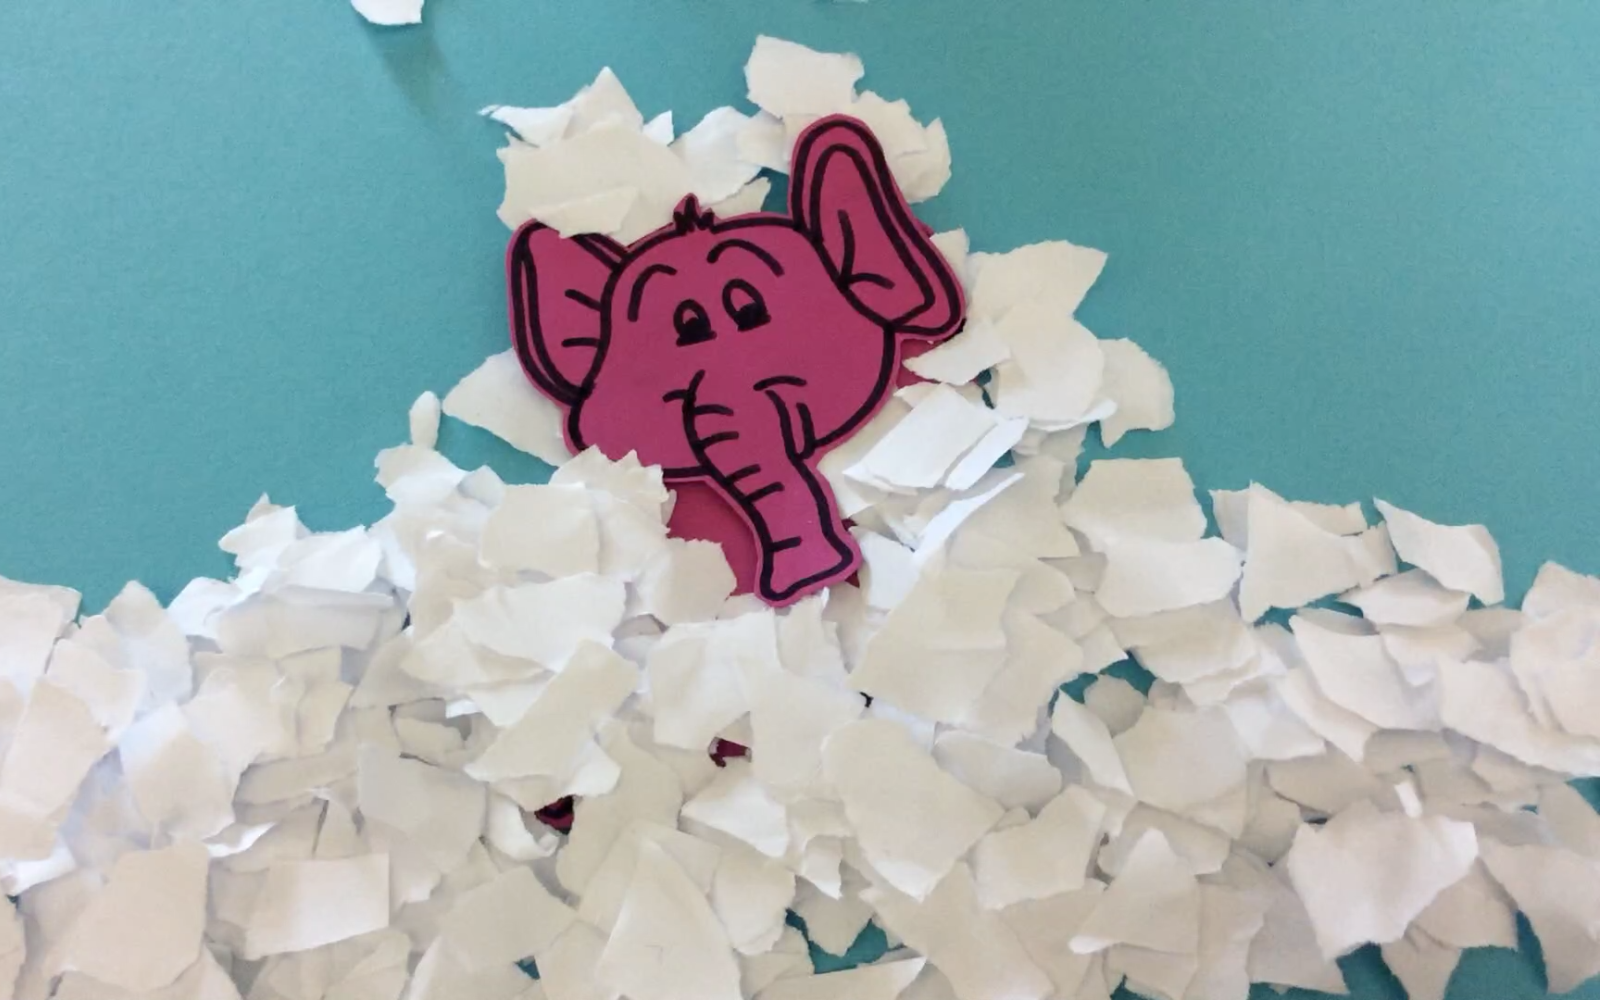 Trickfilmstandbild auf dem ein rosa Elefant mit Papierschnipseln bedeckt ist, als wäre er ganz zugeschneit.